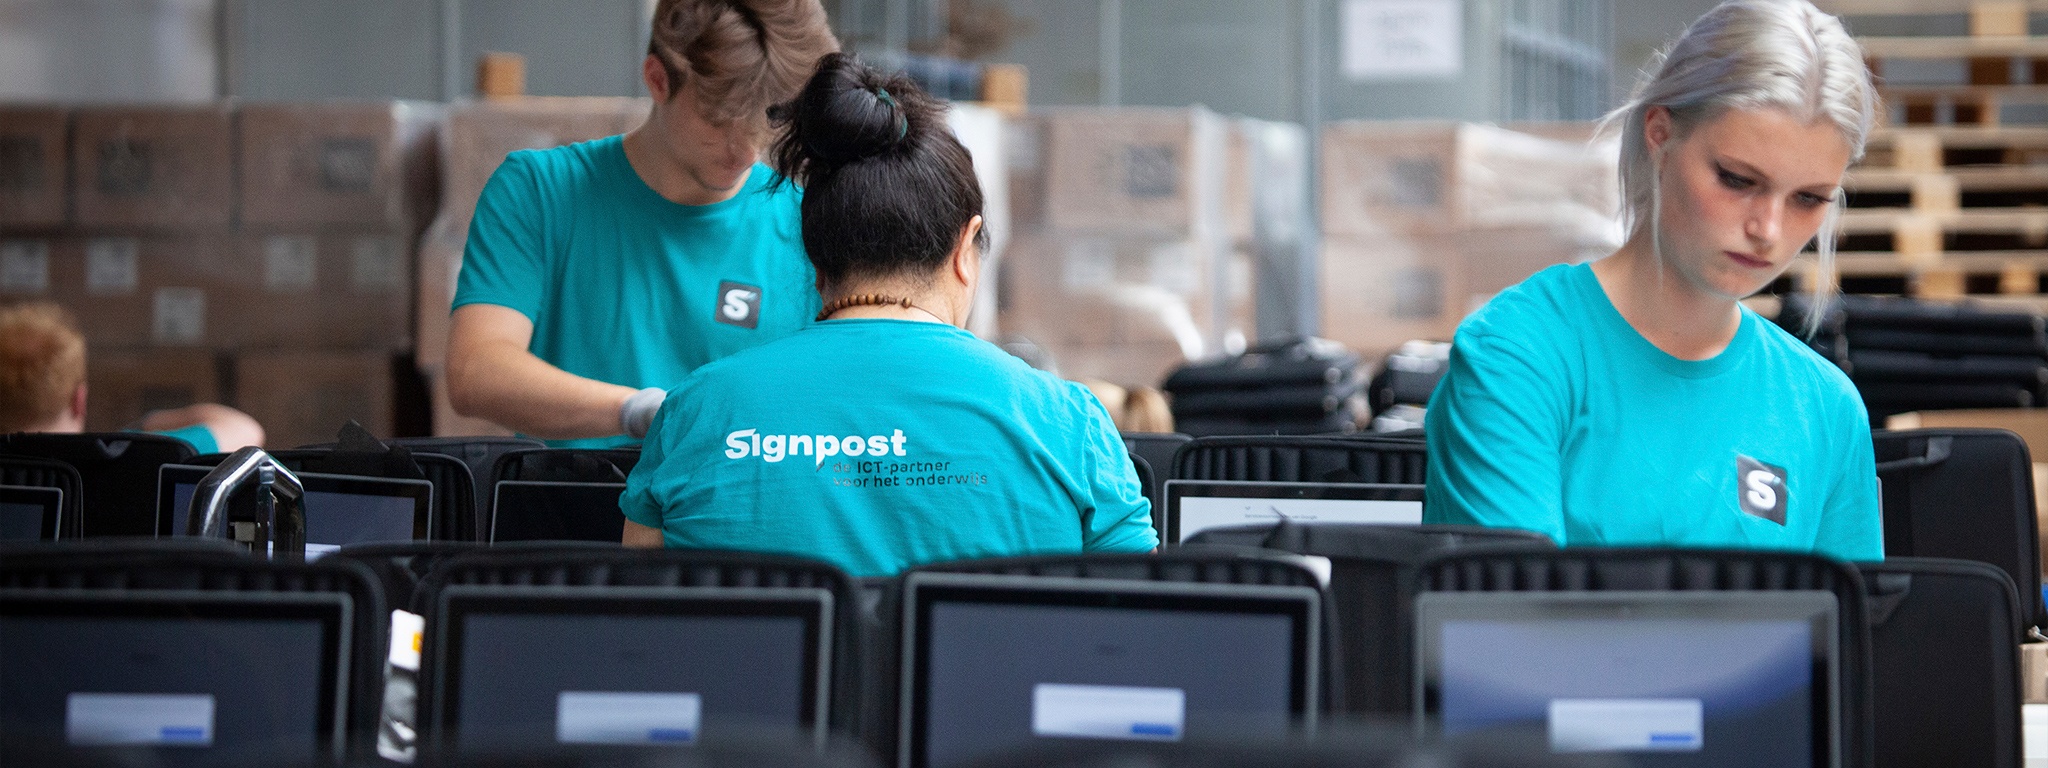 L’équipe de l’entrepôt de Signpost préparant les ordinateurs portables pour la livraison